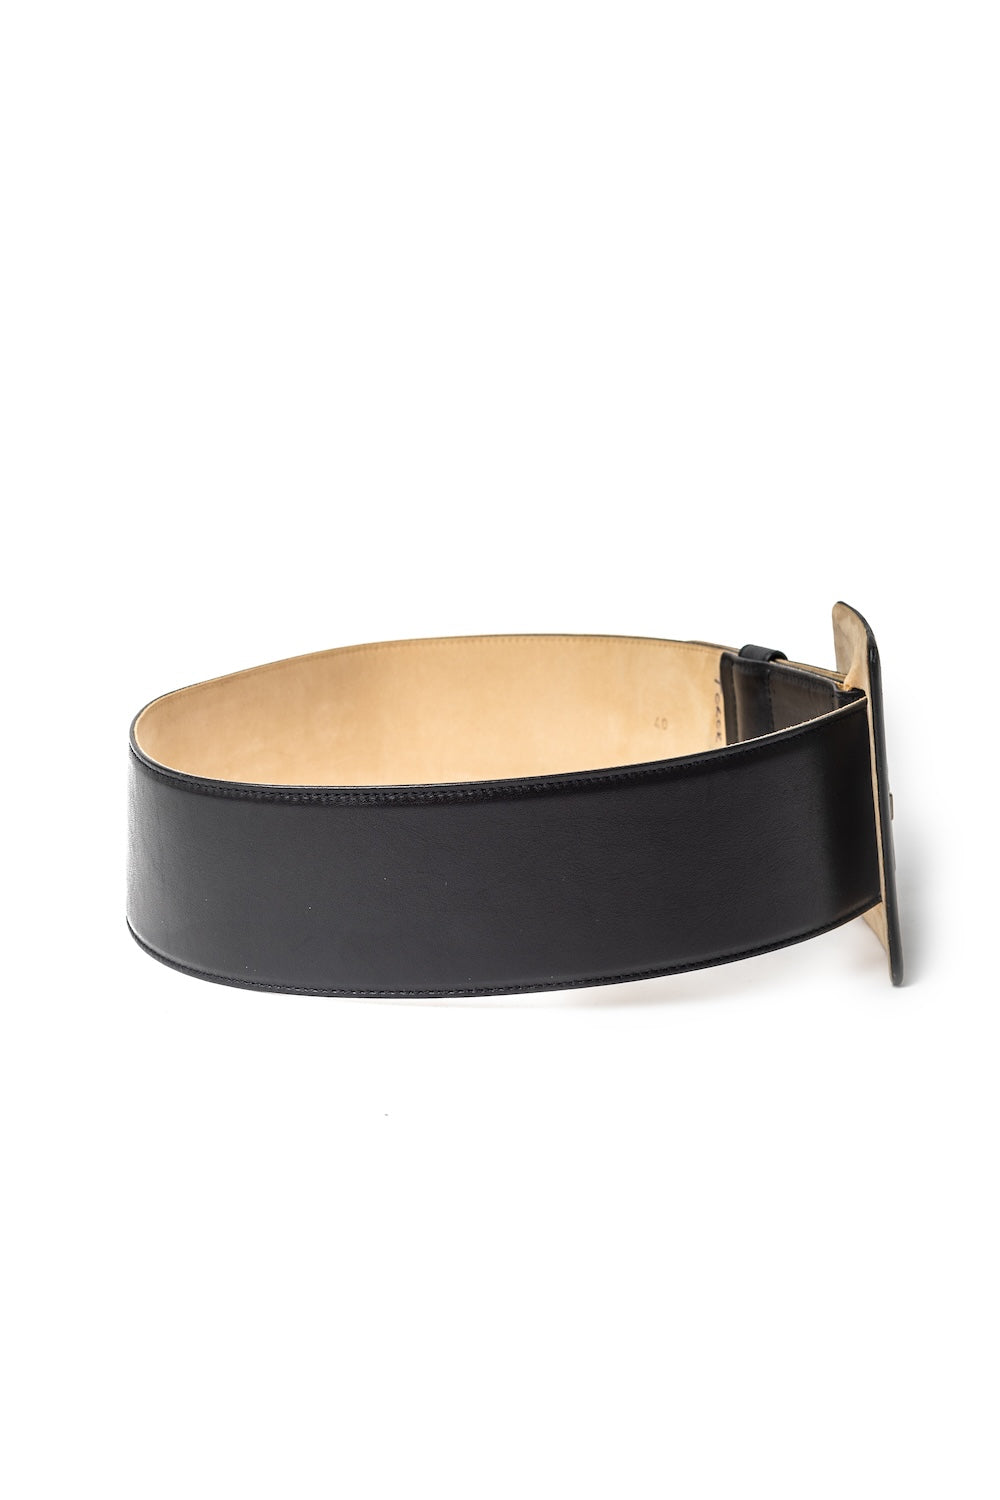 Mondi <br> 80's extra wide lambskin leather oversized buckle belt